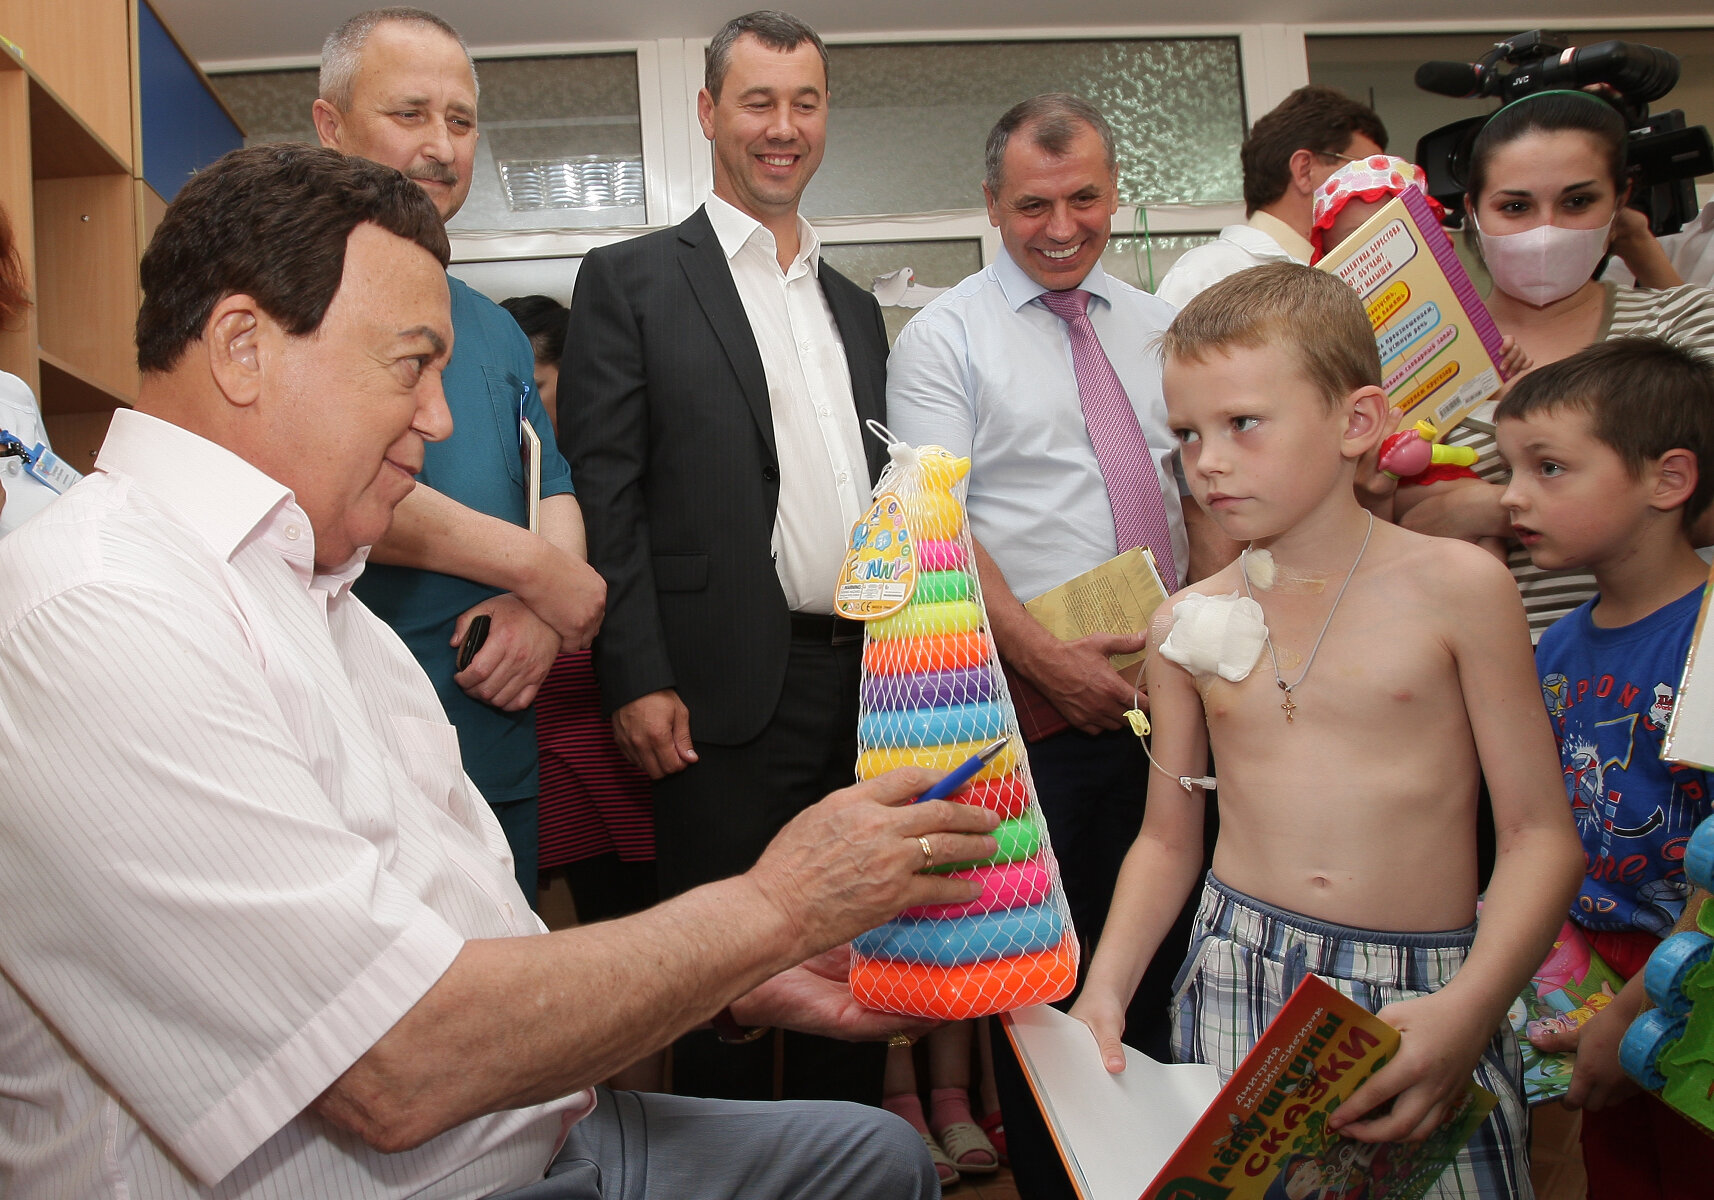 <p>Депутат Госдумы и певец Иосиф Кобзон во время визита в детскую клиническую больницу Симферополя подарил детям игрушки не по возрасту &mdash; например, ребенку 8-9 лет досталась игрушечная пирамидка.</p>